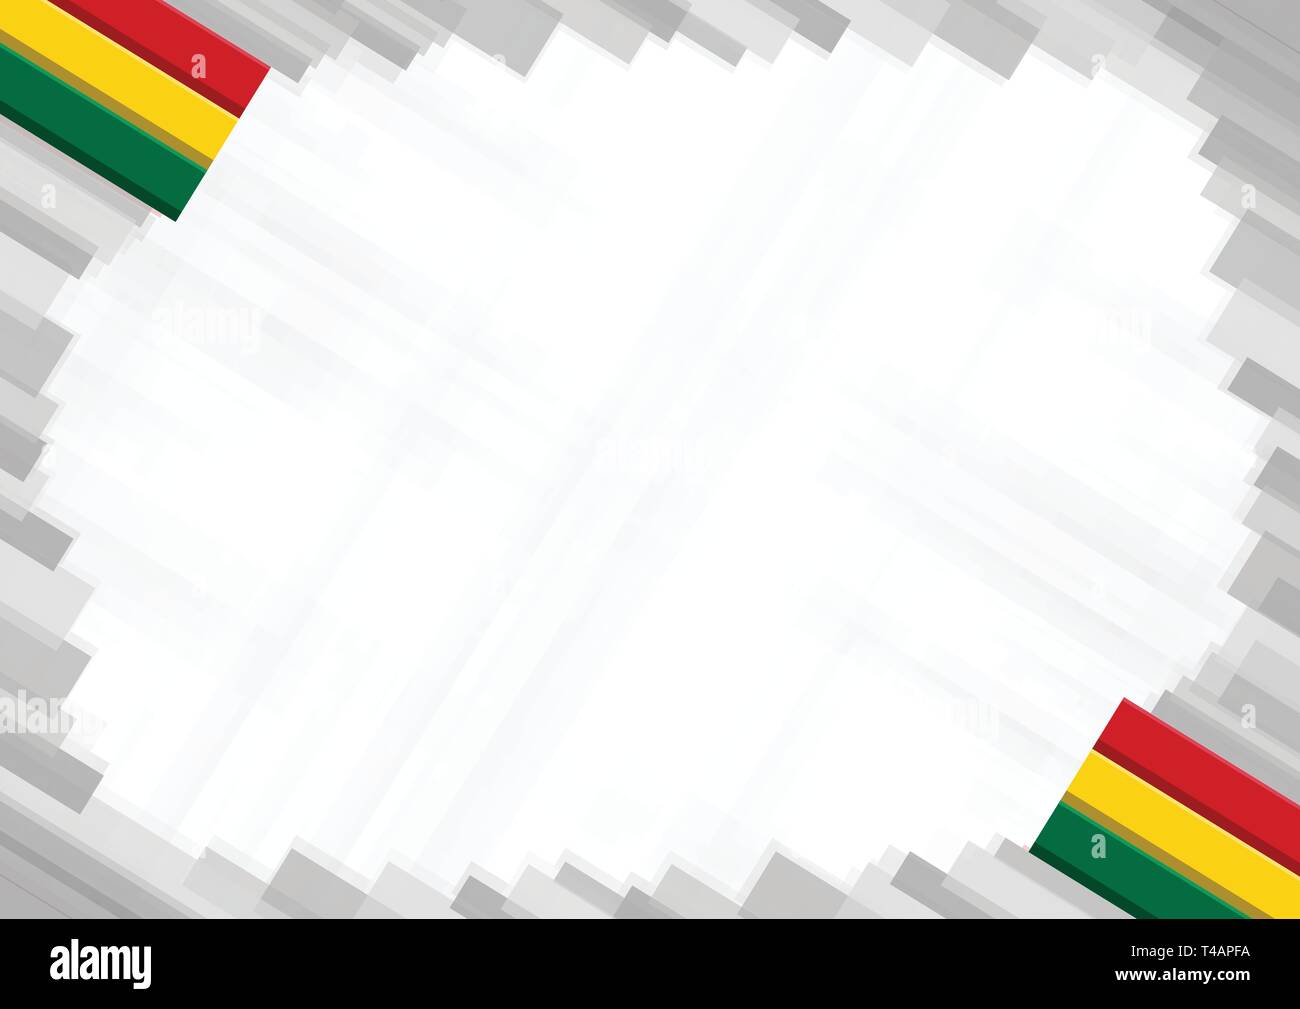 Màu sắc quốc gia Ghana là những màu sắc rực rỡ và đậm chất văn hóa, được hiển thị trên cờ đỏ, vàng và xanh lá cây. Hãy xem hình ảnh liên quan đến từ khóa này để tìm hiểu thêm về màu sắc quốc gia Ghana và cảm nhận sự độc đáo của nó.